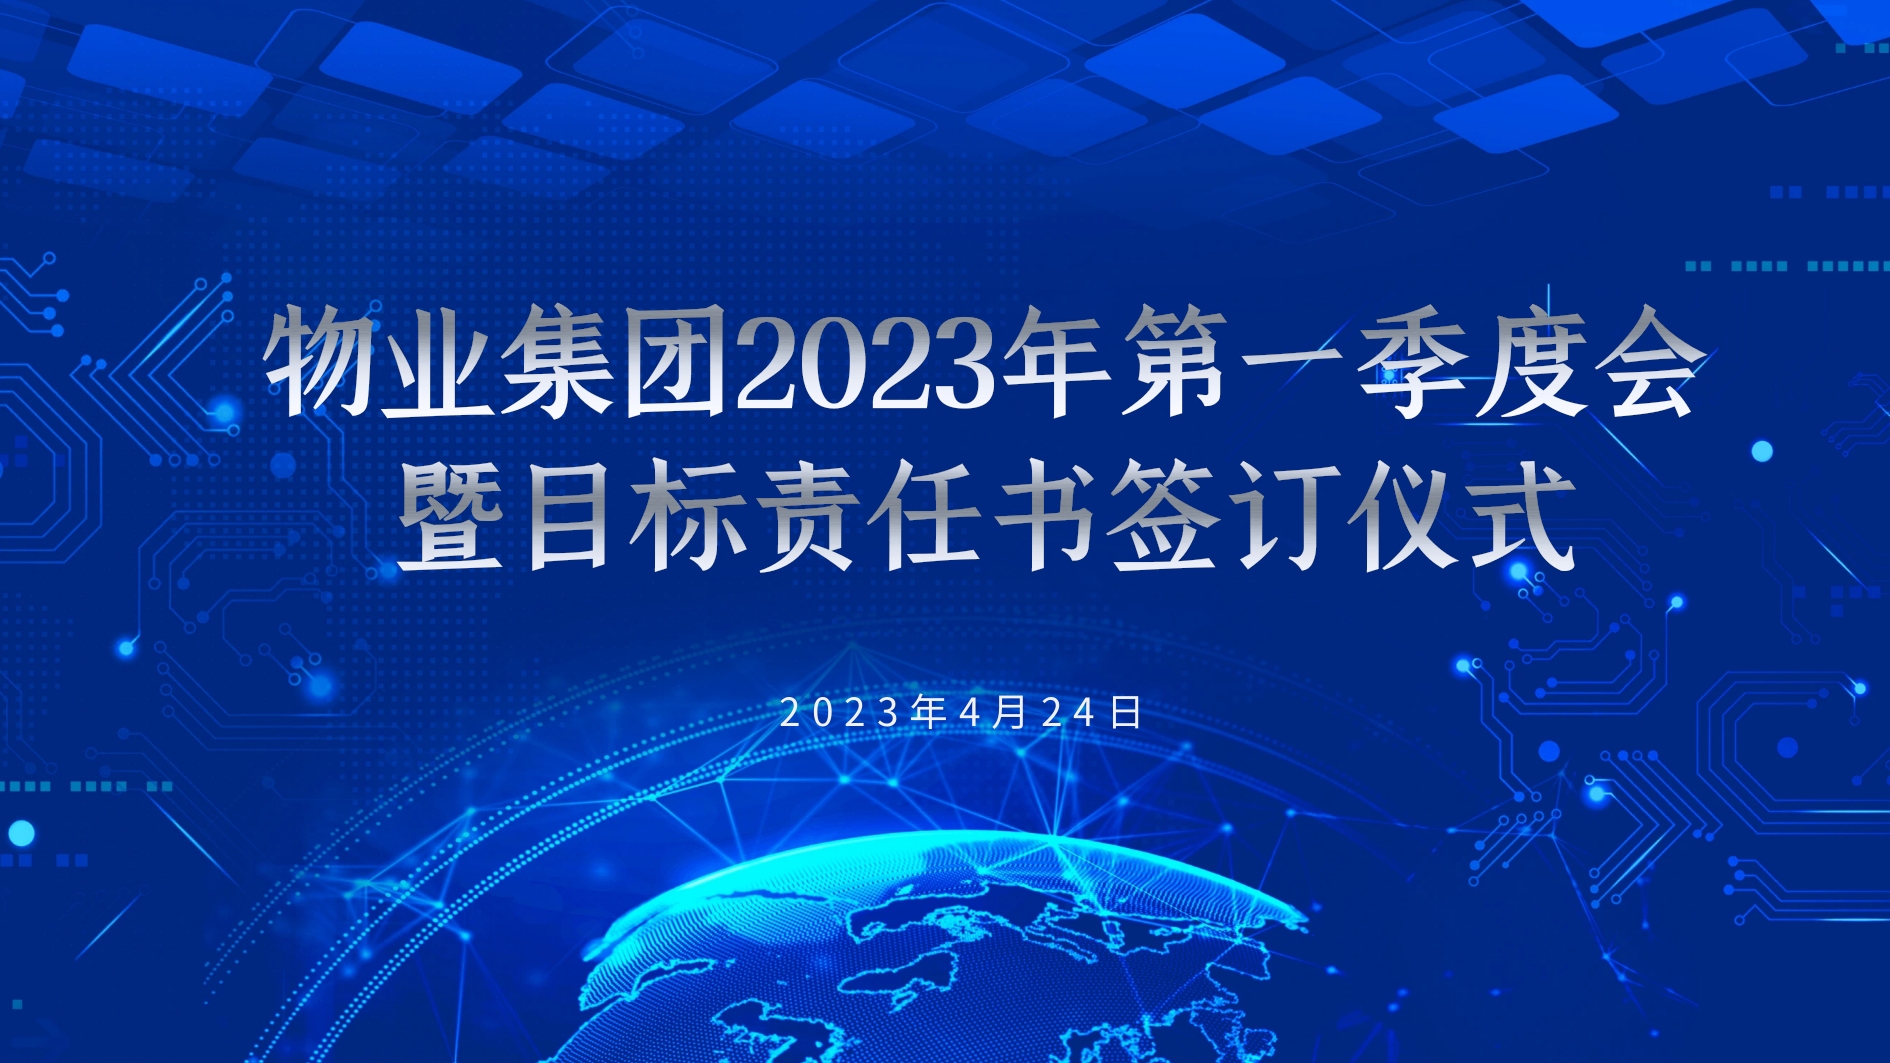 新世纪物业2023年第一季度会暨目标责任书签订仪式圆满举行